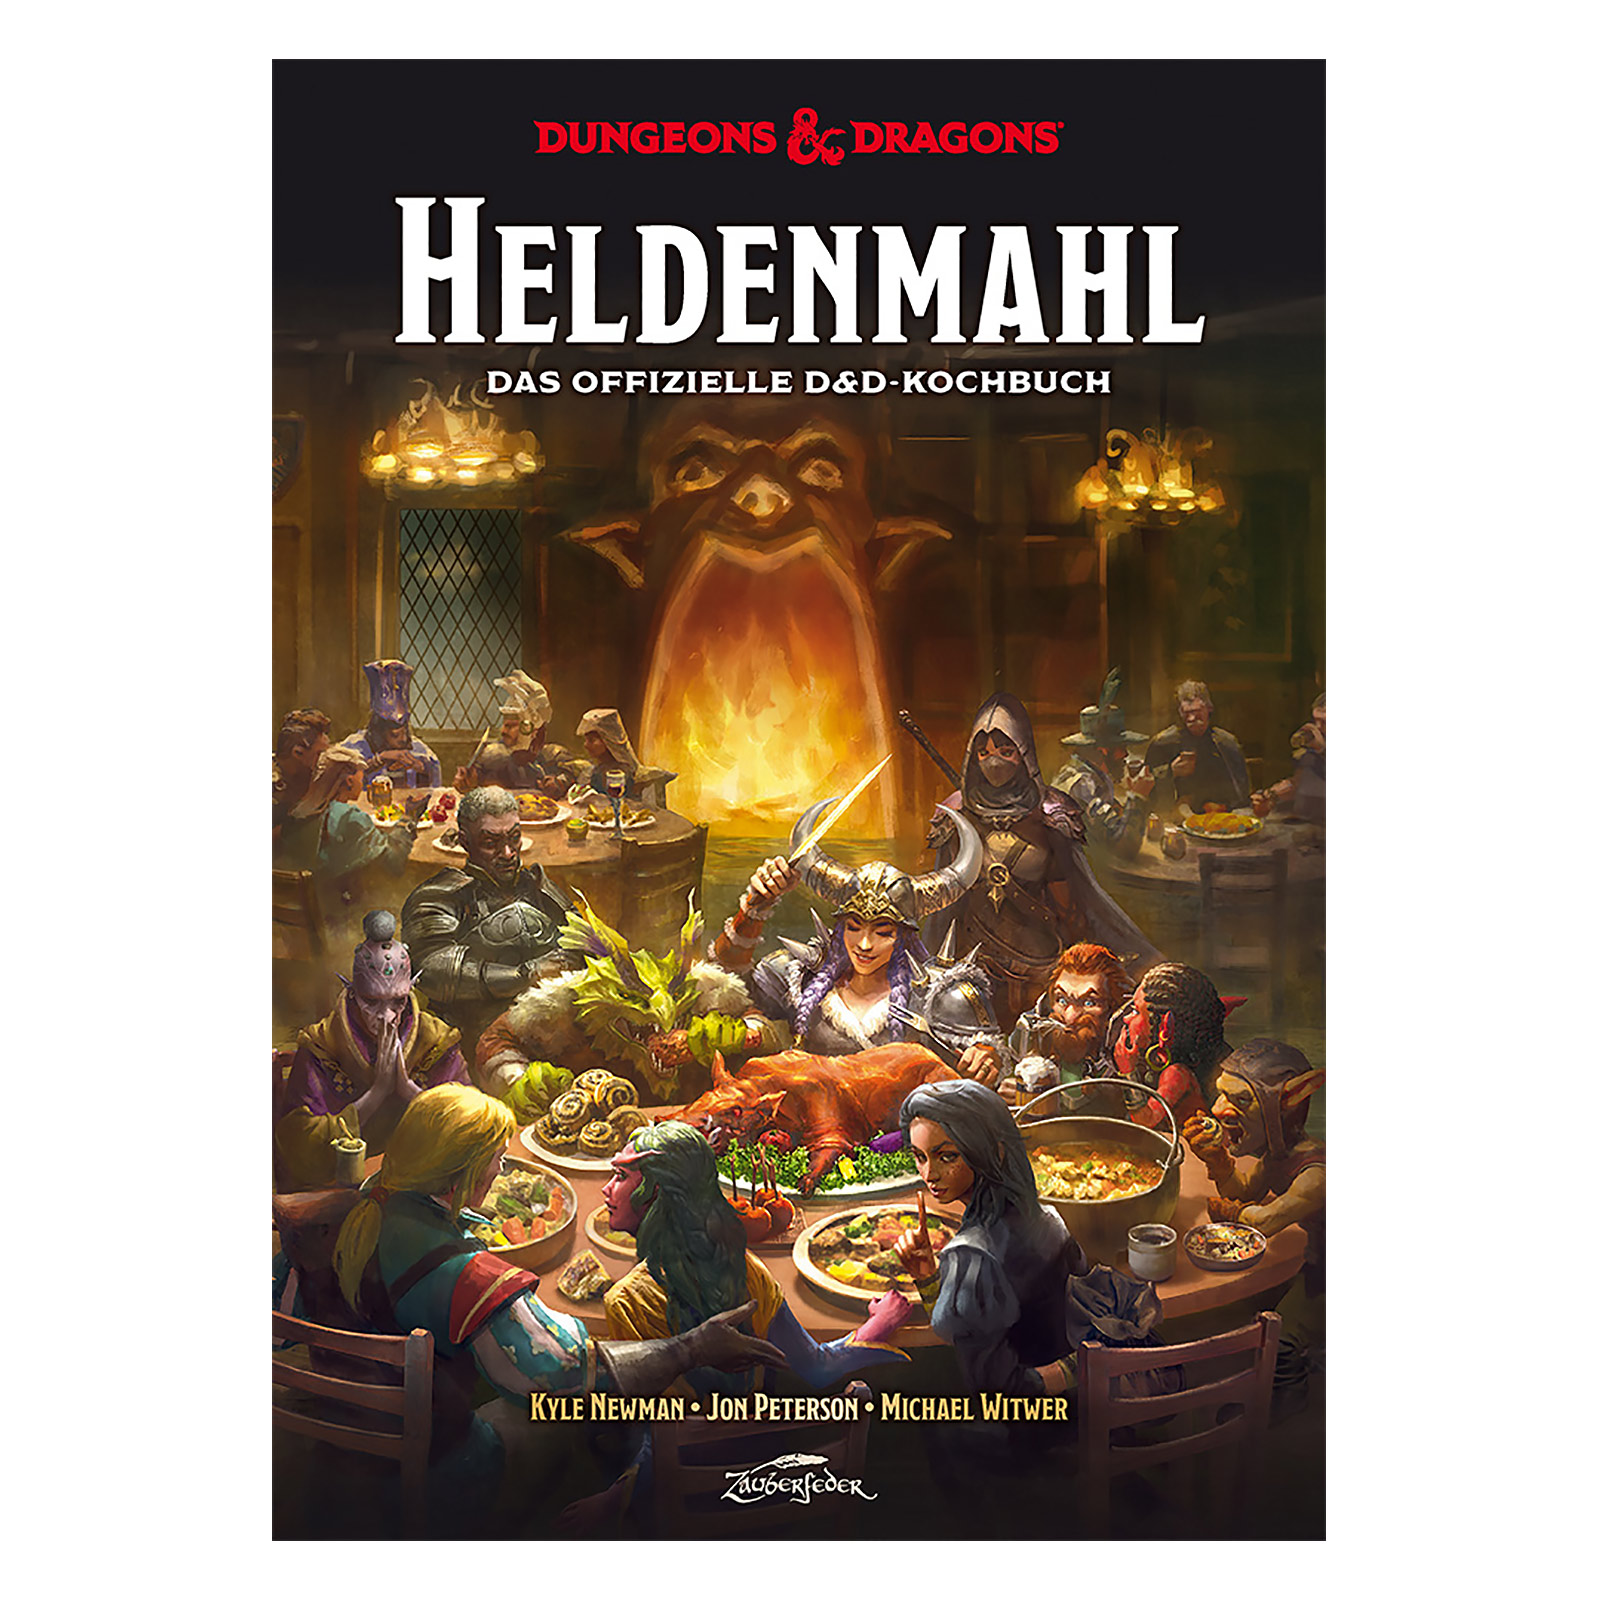 Dungeons & Dragons - Heldenmahl Das offizielle D&D-Kochbuch